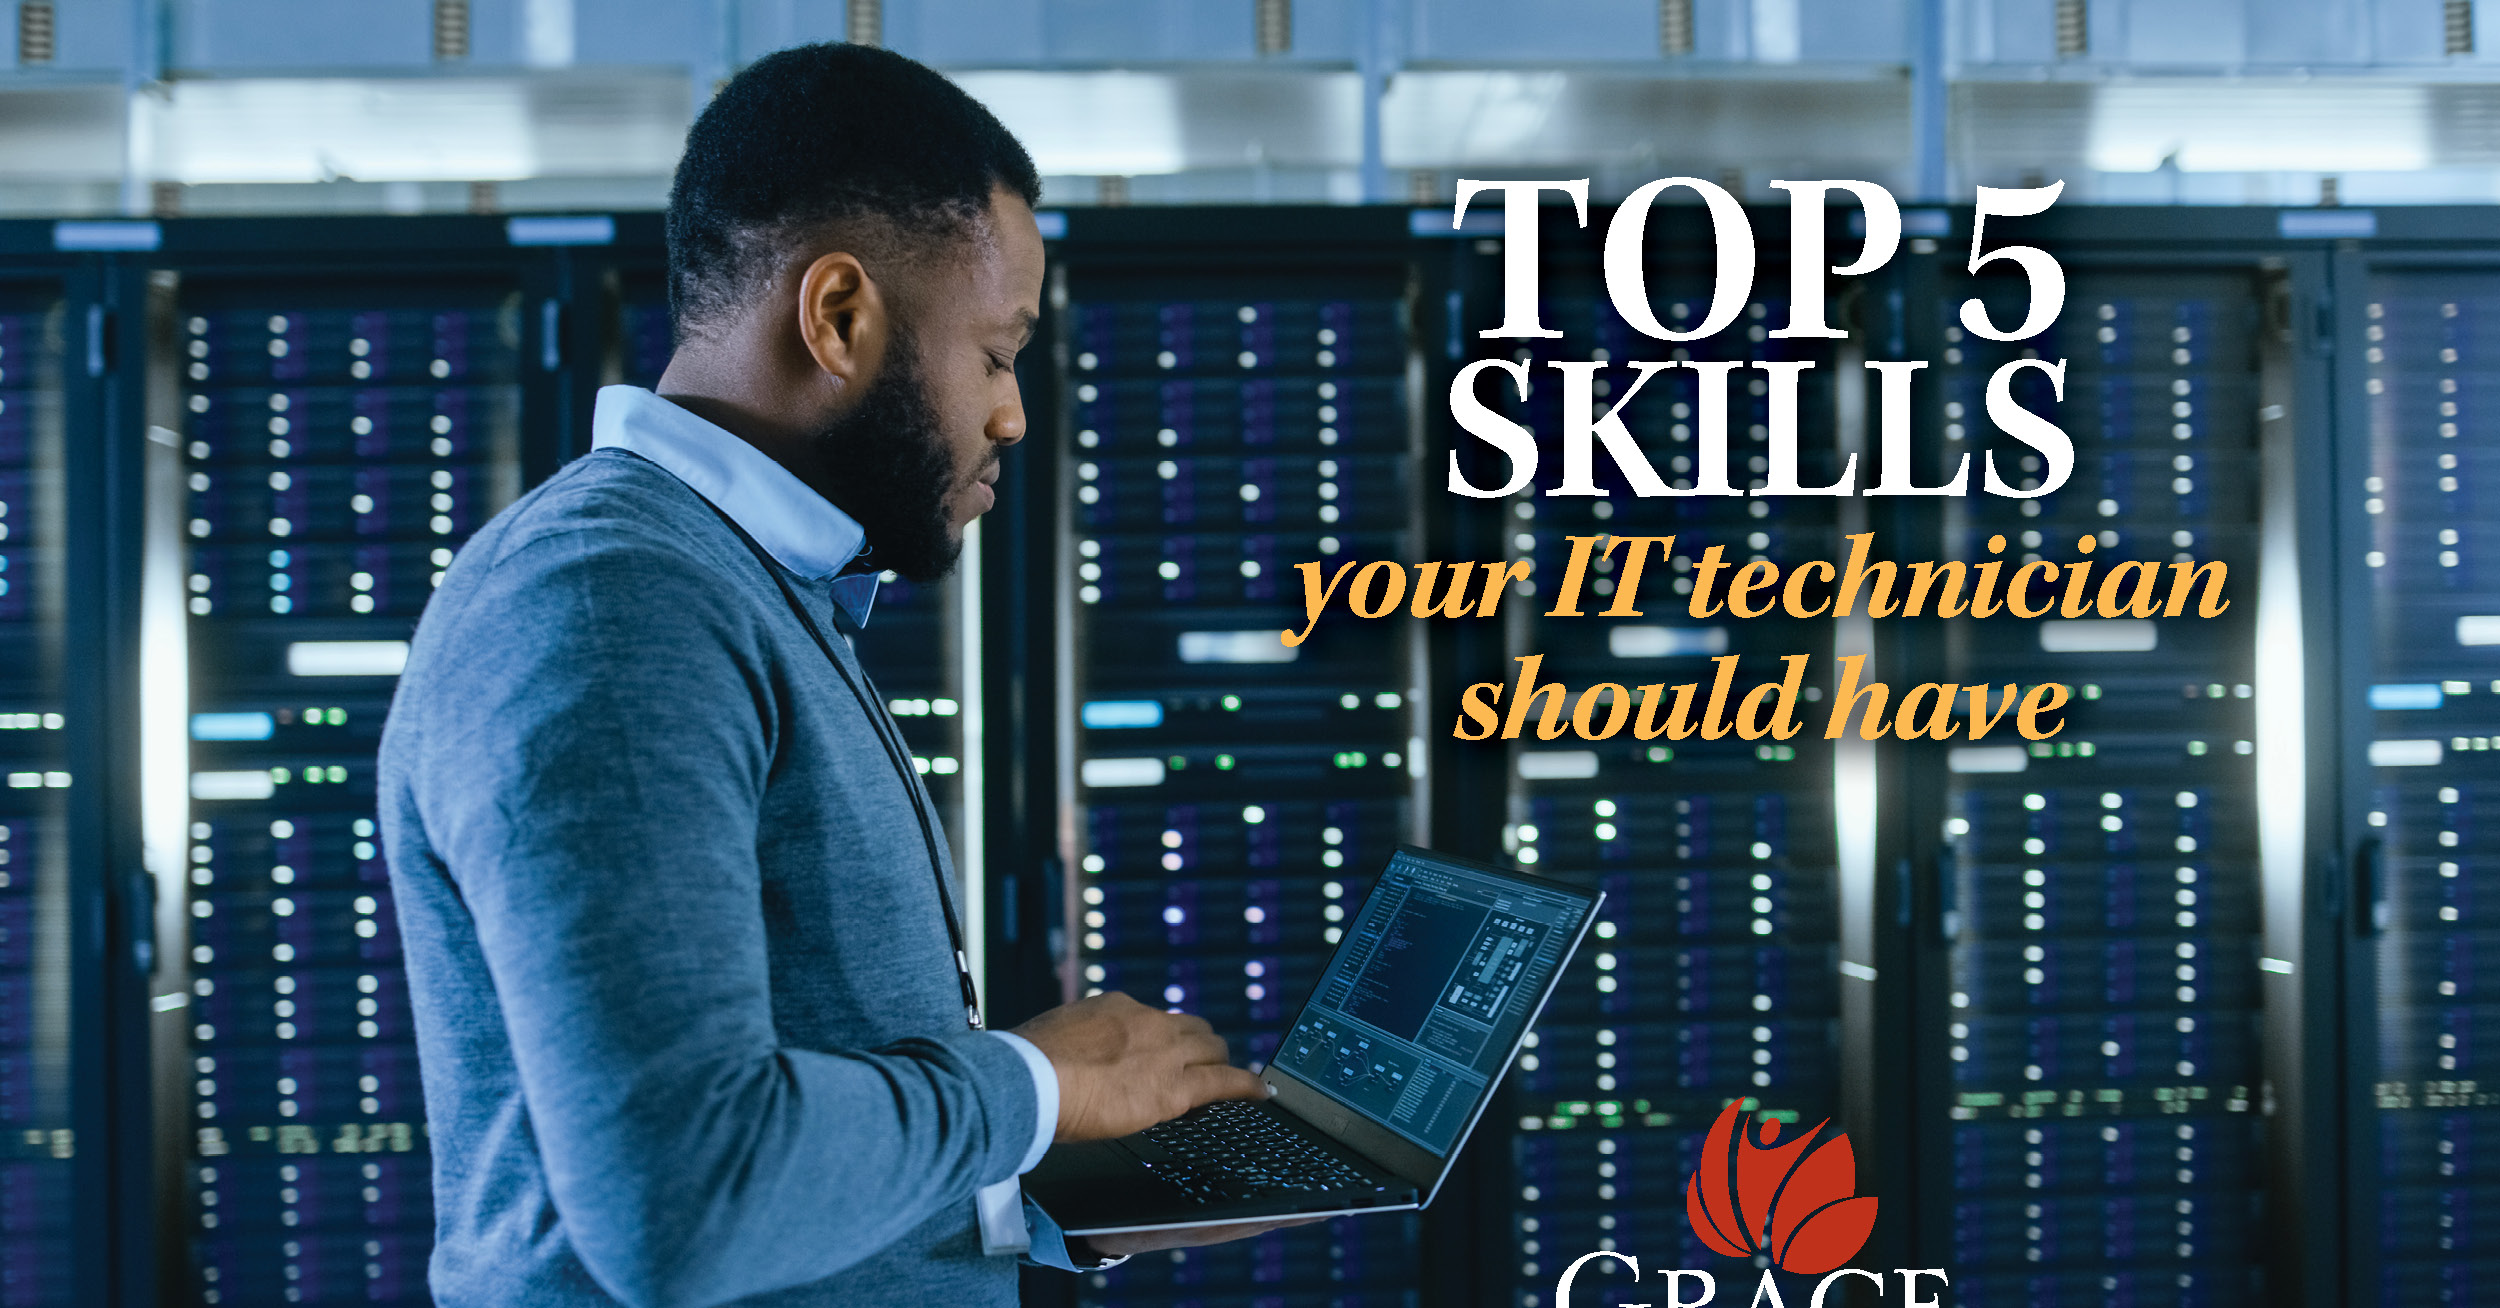 1-Top 5 skills your IT technician should hav